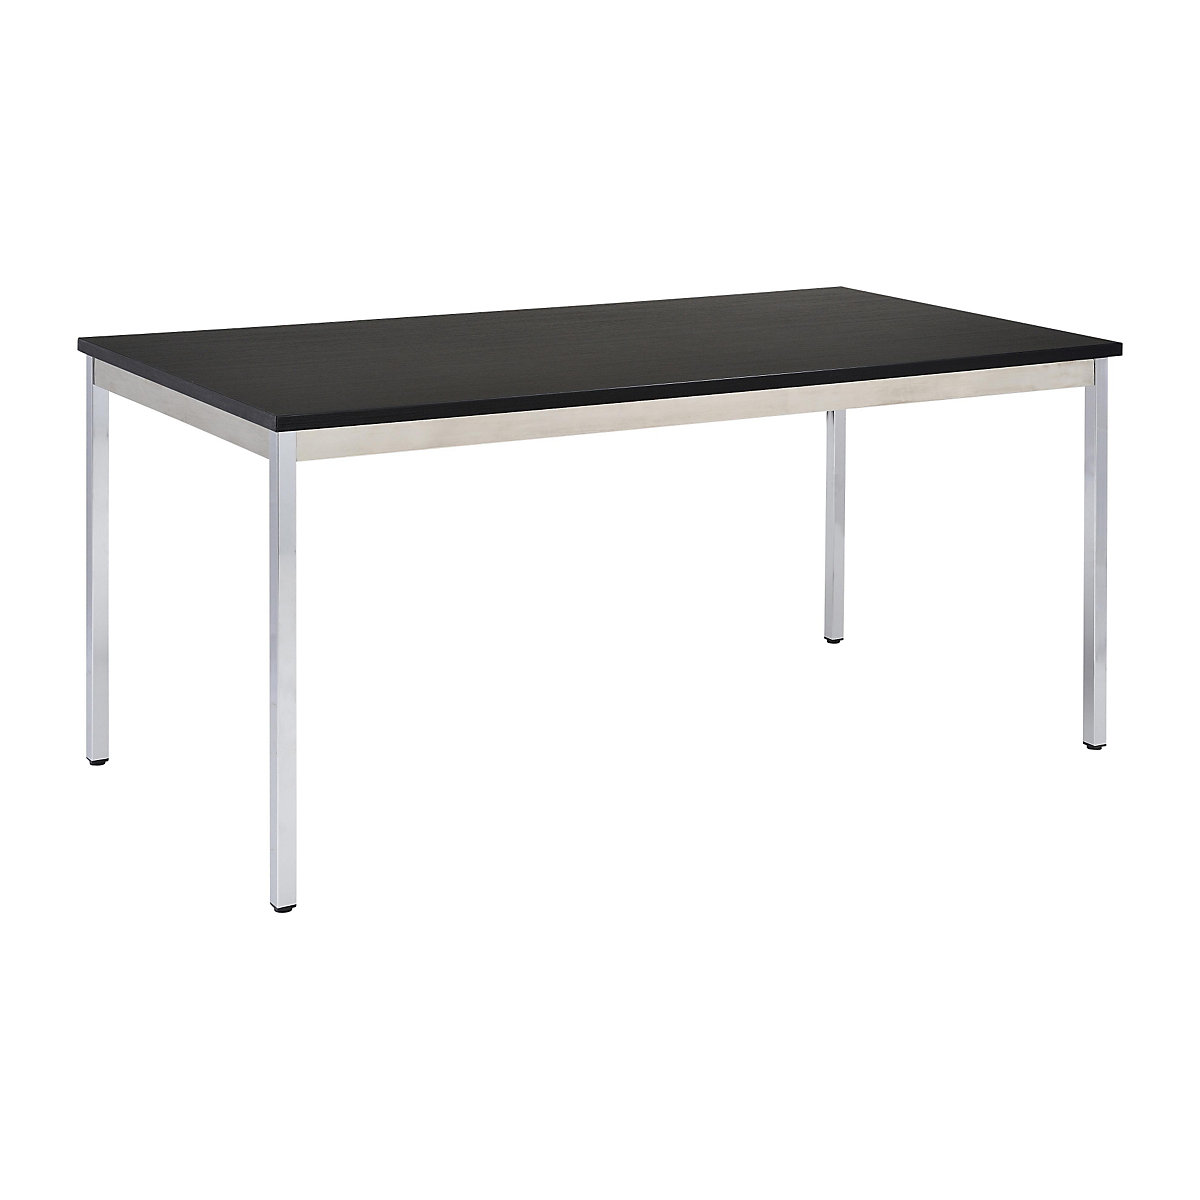 Univerzális asztal – eurokraft basic, négyszög alakú, szé x ma 1200 x 740 mm, mélység 600 mm, fekete lap, krómozott váz-15